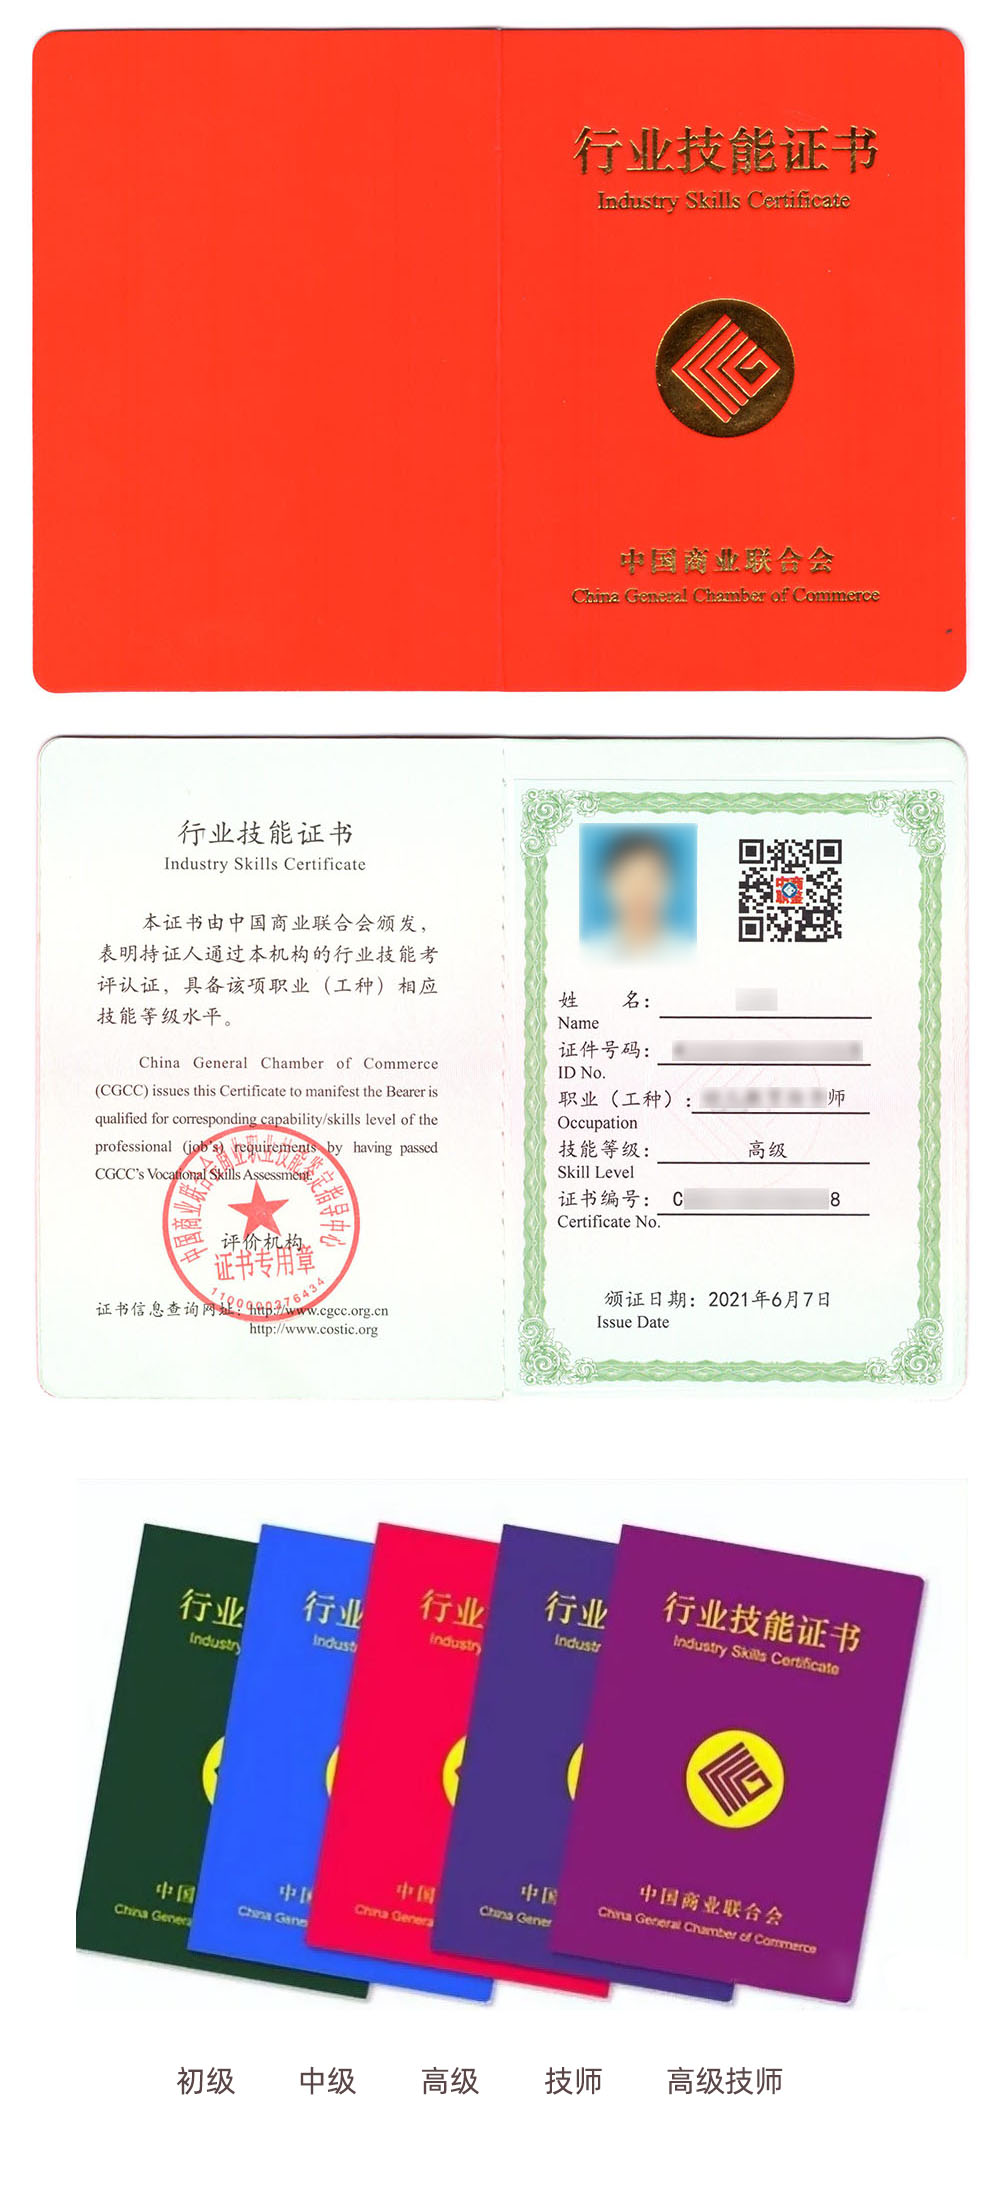 中国商业联合会商业职业技能鉴定中心 行业技能证书 企业人力资源管理师证证书样本